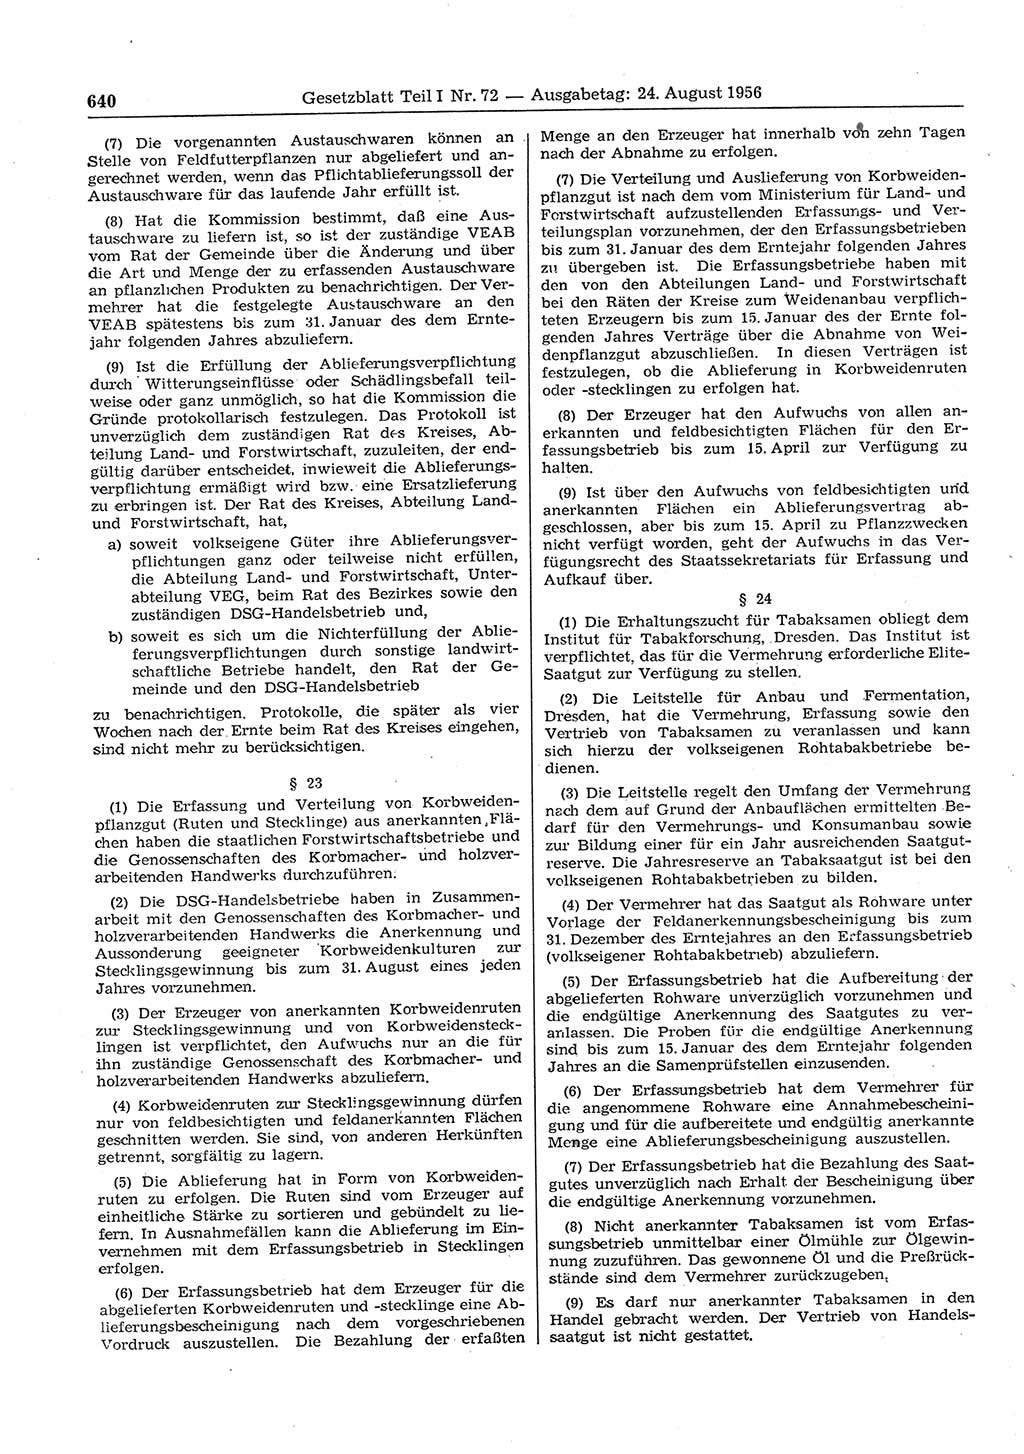 Gesetzblatt (GBl.) der Deutschen Demokratischen Republik (DDR) Teil Ⅰ 1956, Seite 640 (GBl. DDR Ⅰ 1956, S. 640)